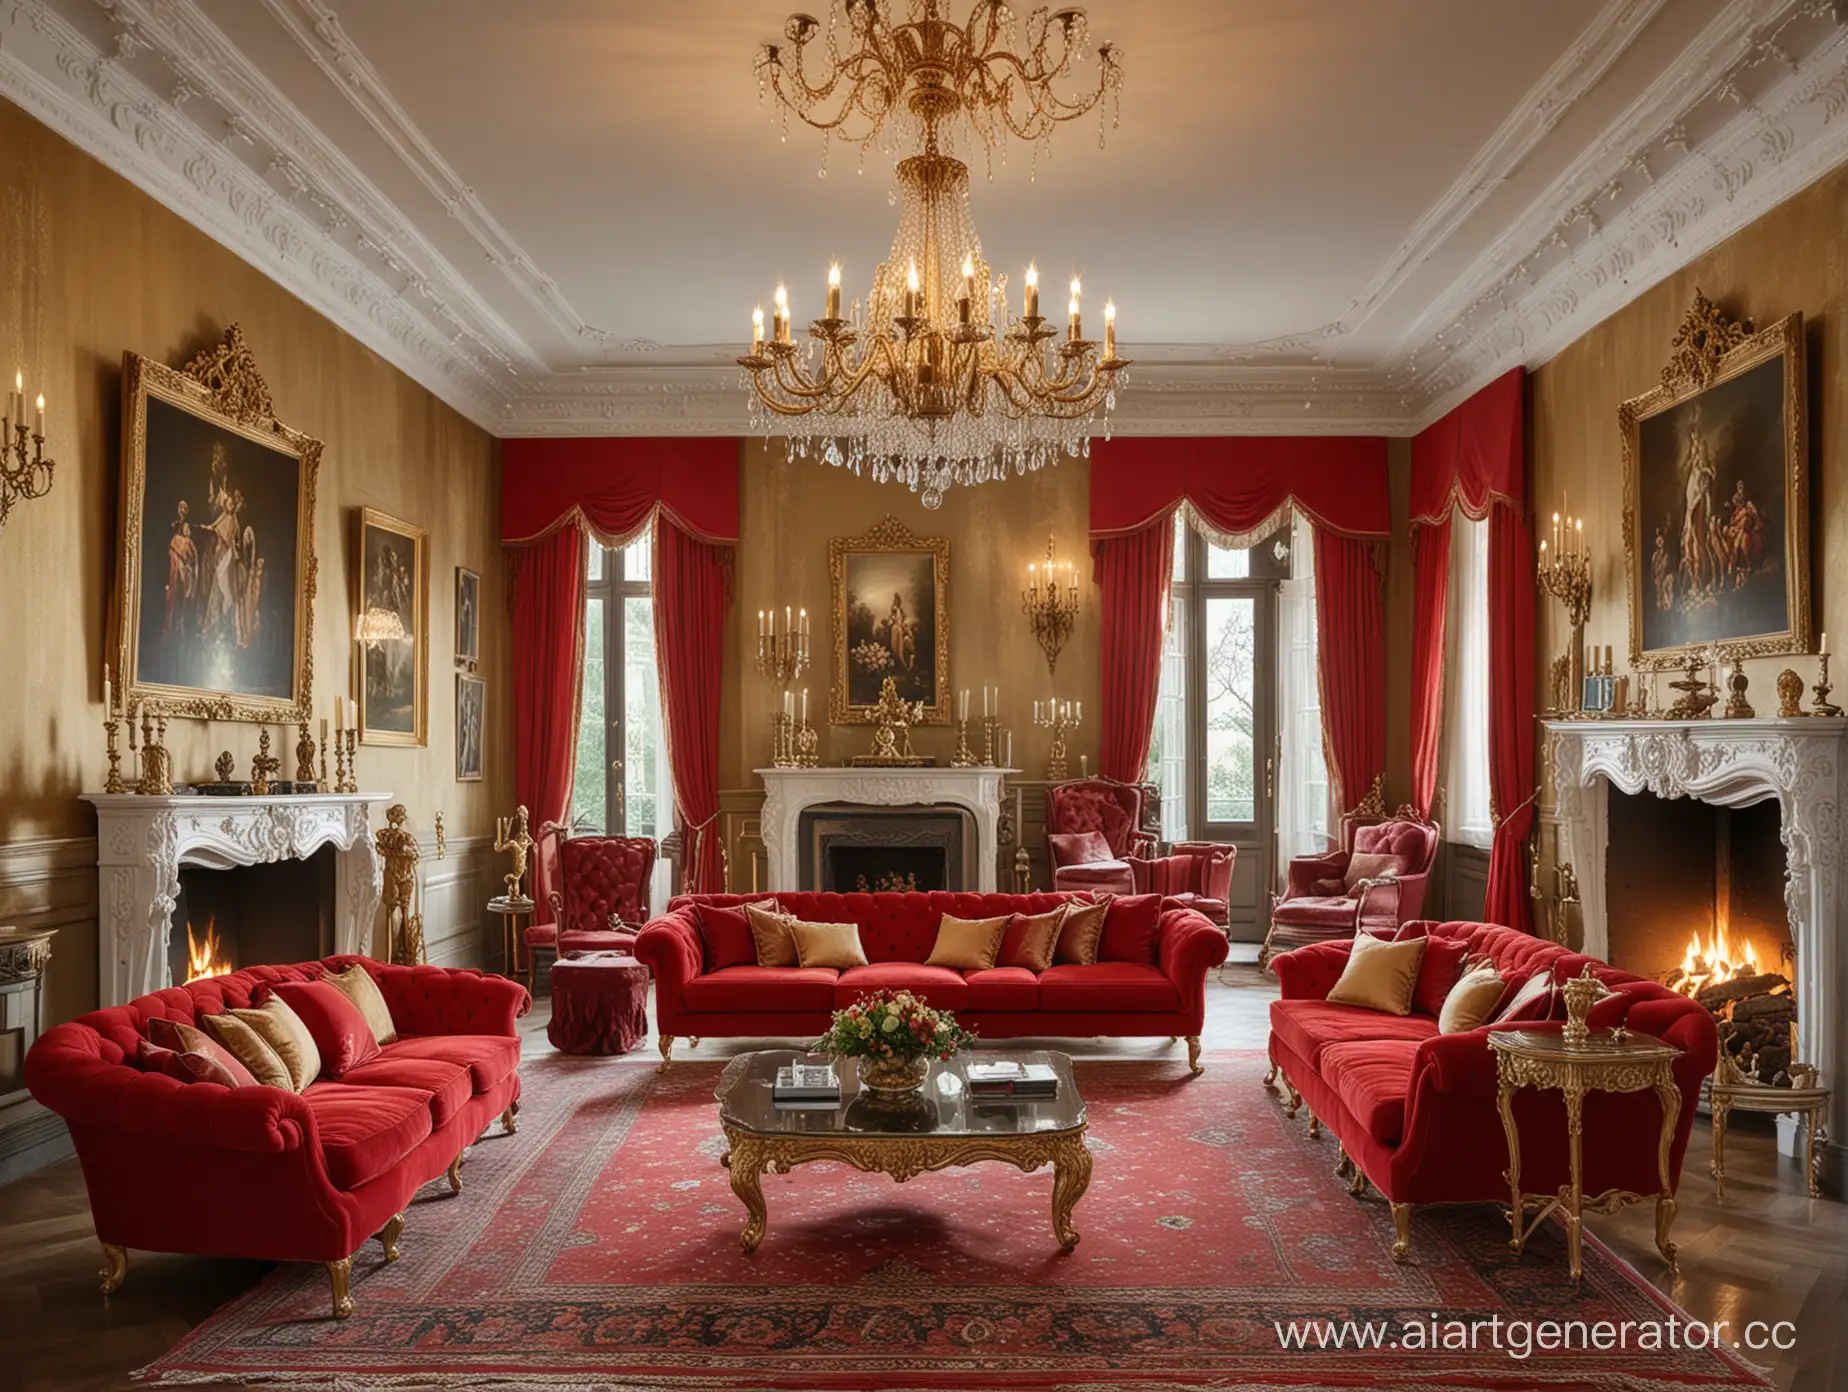 роскошная гостиная,люстра,красный диван,камин,канделябры,картины на стенах,богатство,золотые украшения